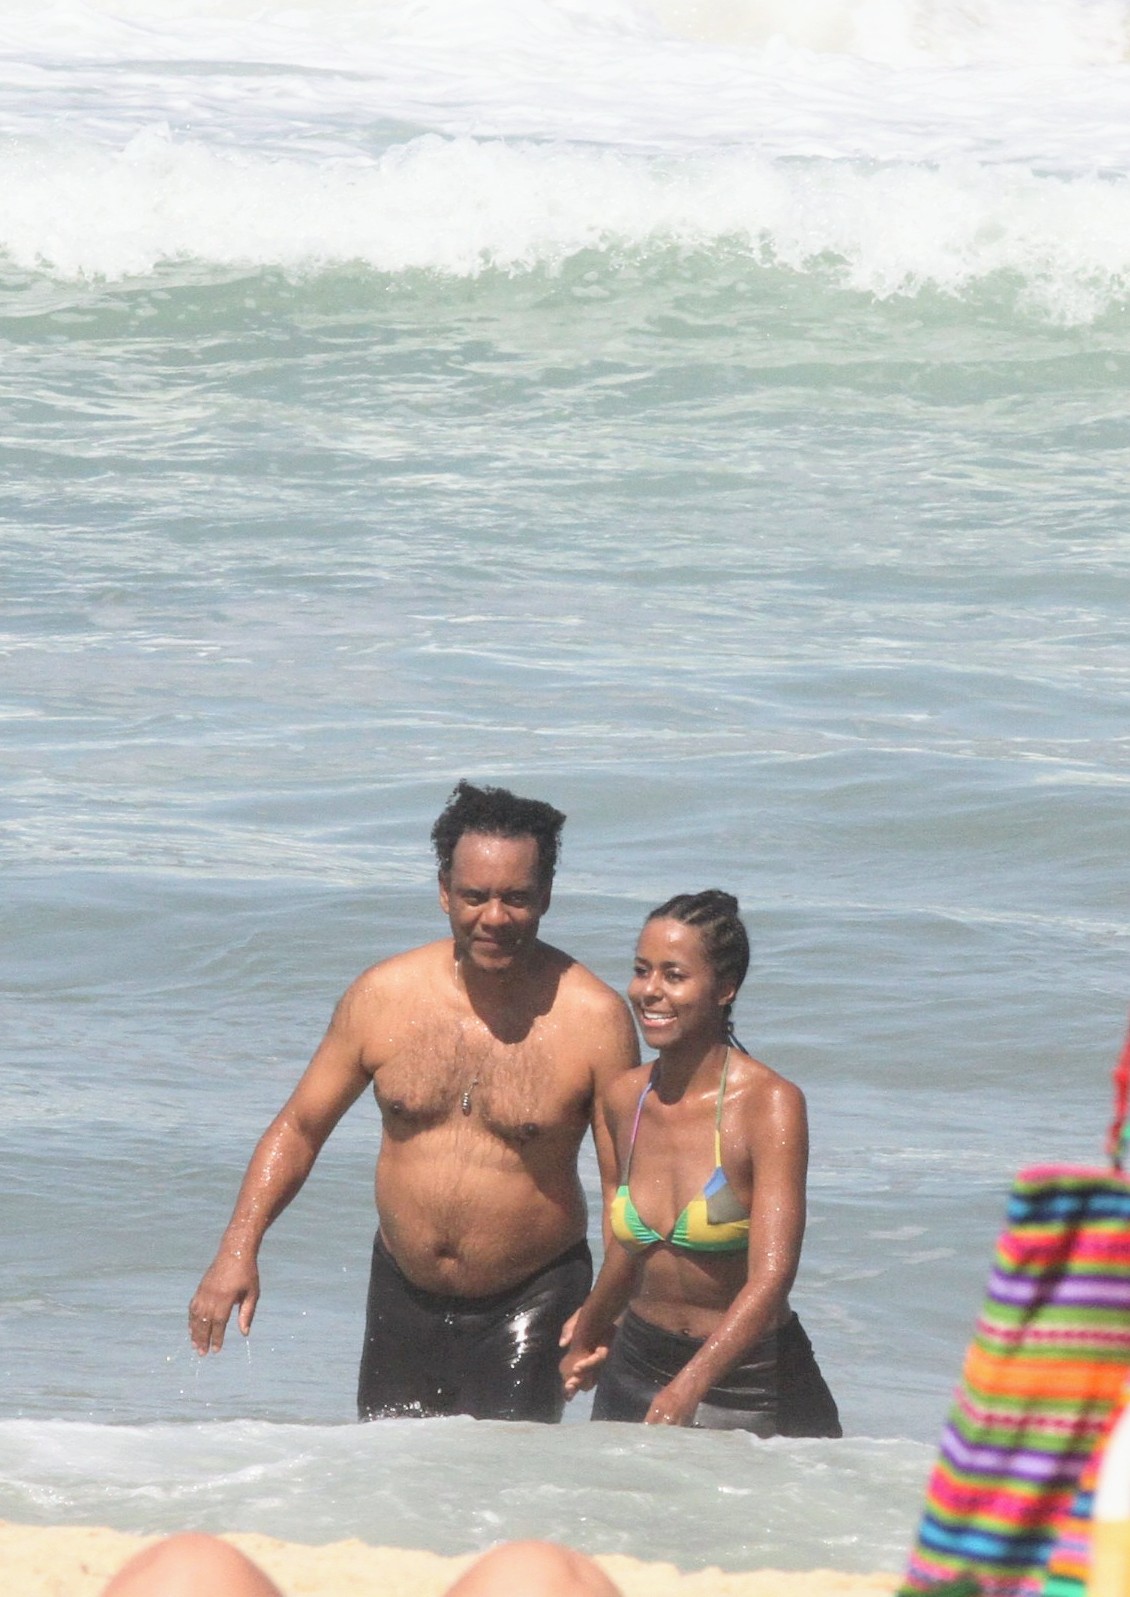 Foto de Maju Coutinho com o marido, Agostinho Paulo Moura, saindo do mar